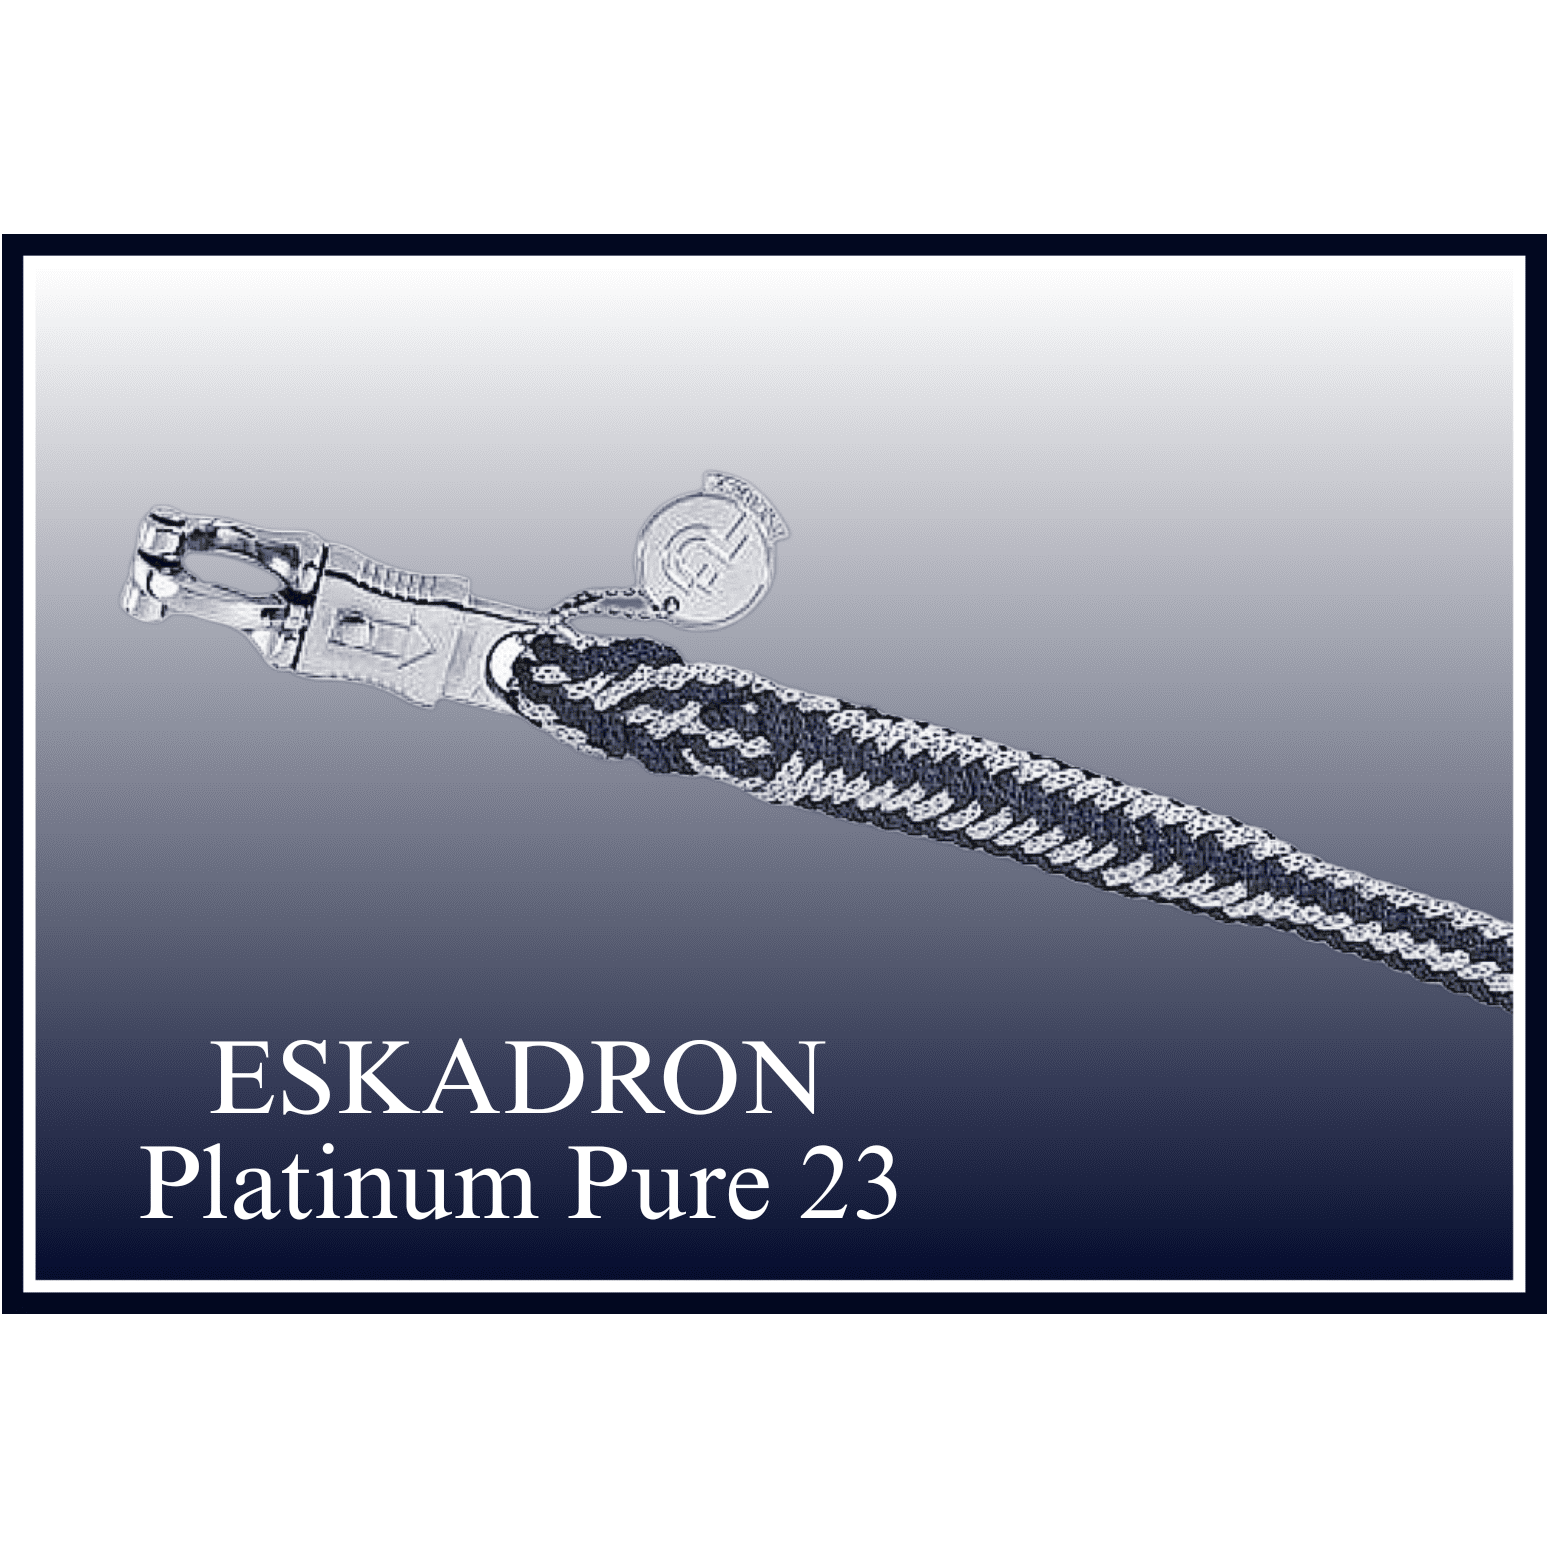 ESKADRON Platinum Pure 23 Strick mit Panikhaken DURALASTIC navy bei SP-Reitsport